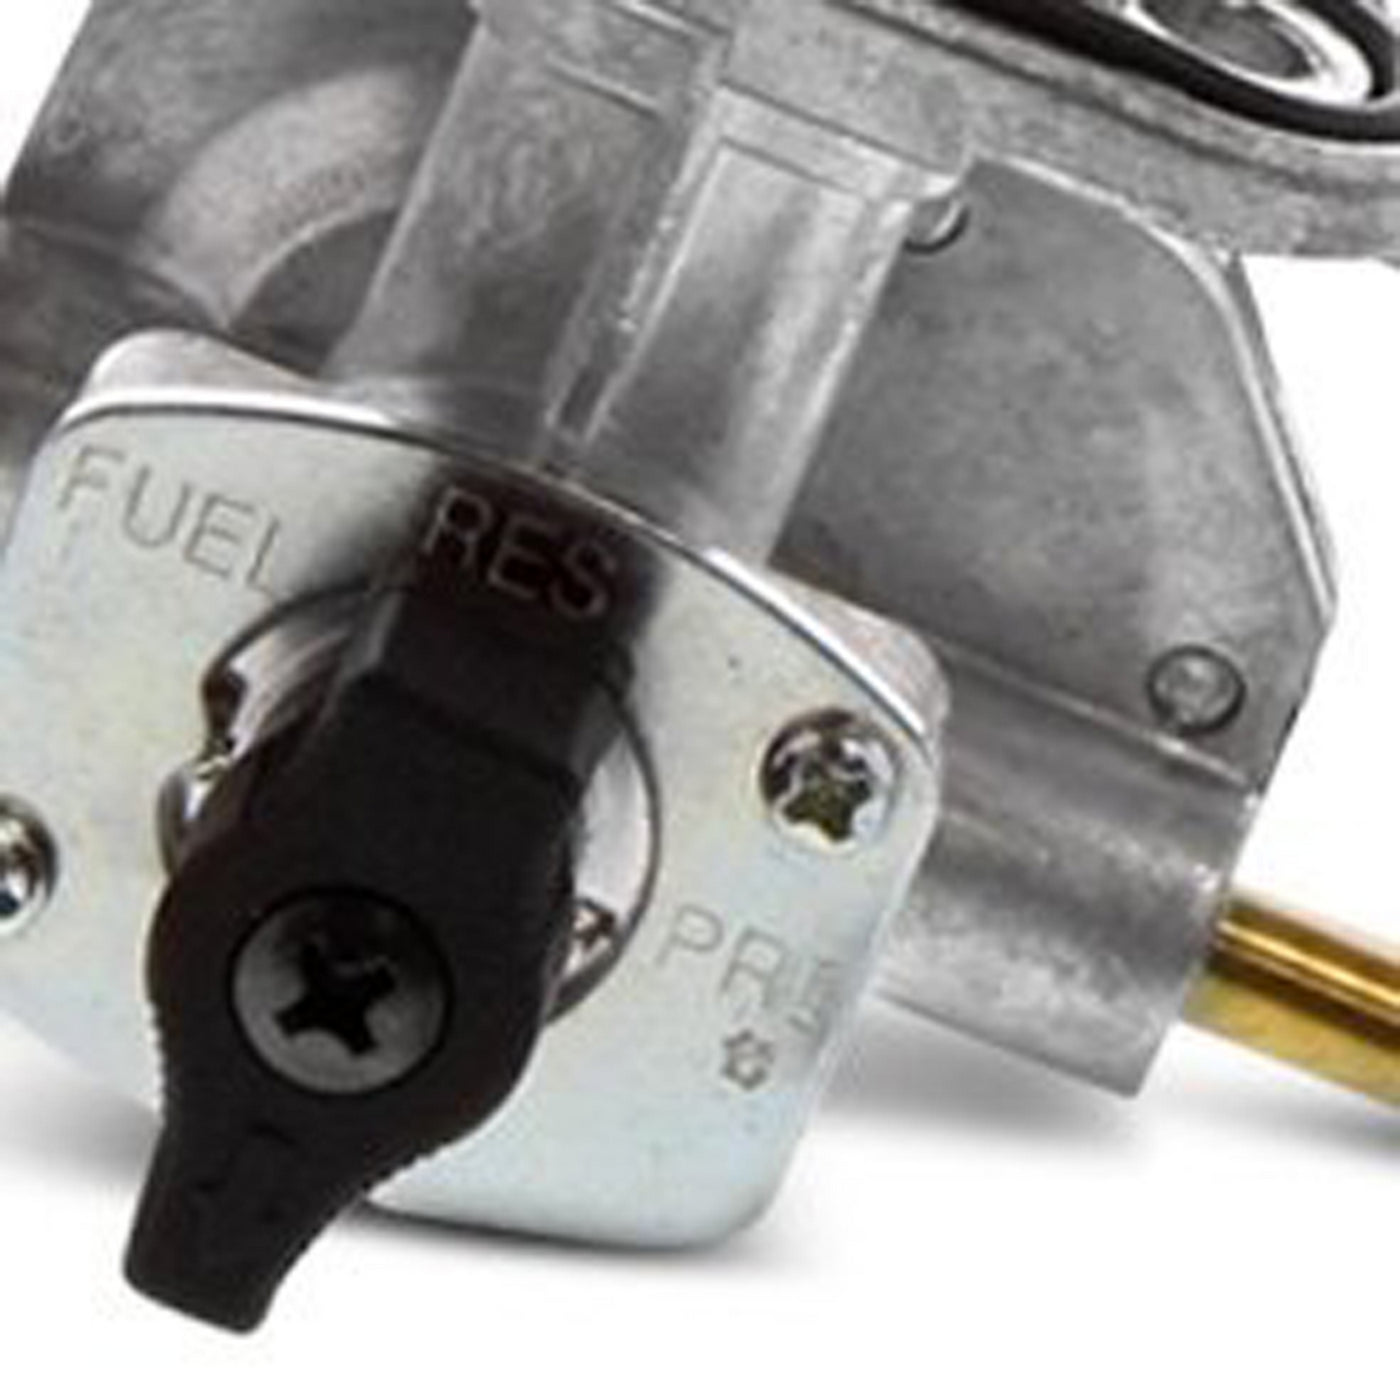 Fuel Star FS101-0145 Fuel Valve Kit #FS101-0145